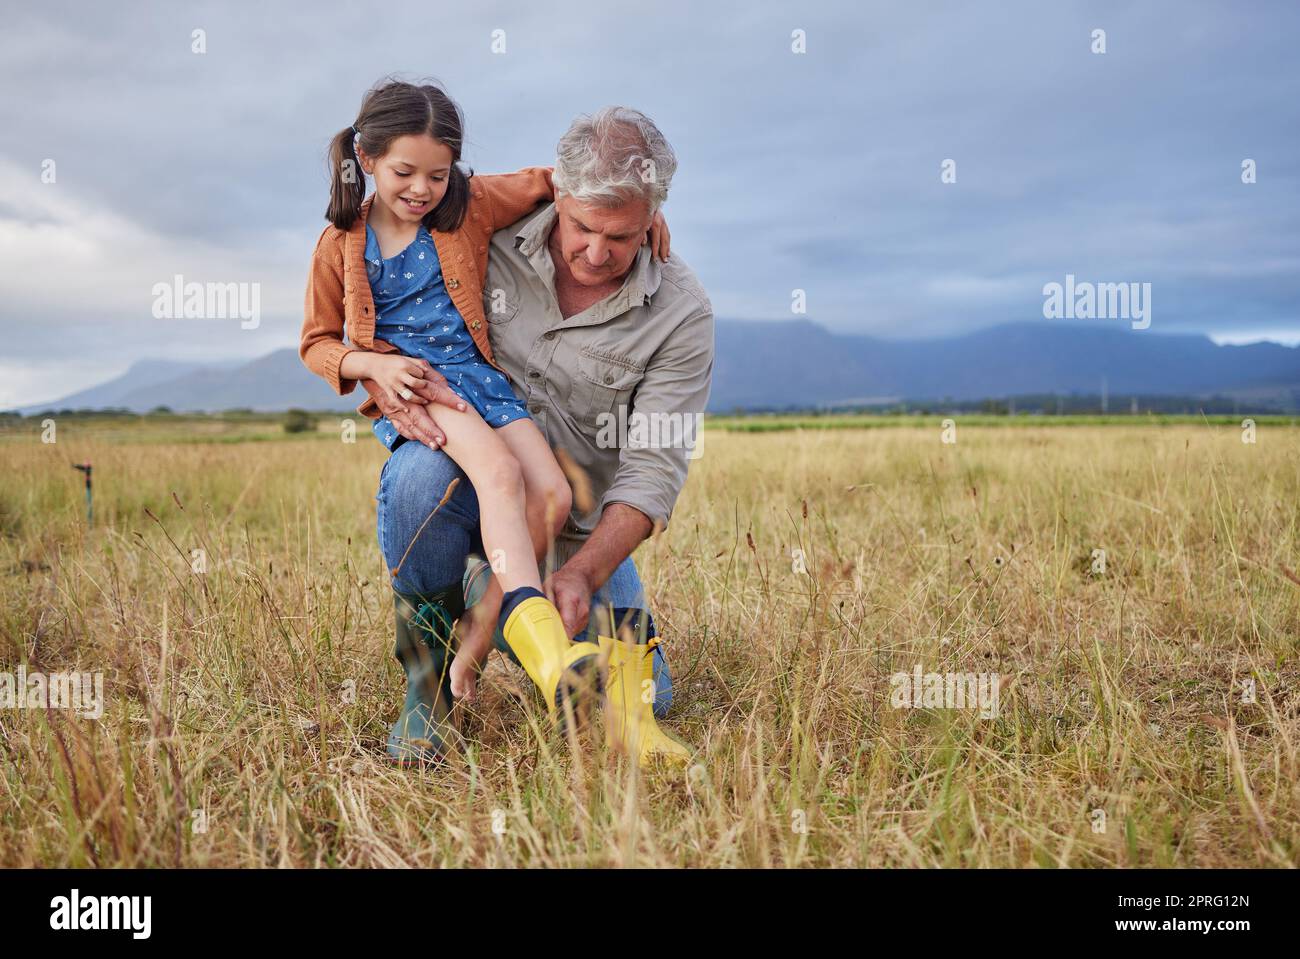 Viel Spaß mit der Familie auf dem Bauernhof, Großeltern und Mädchen haben Spaß in der Natur, bereiten Sie sich auf den gemeinsamen Spaziergang vor. Lächelndes Kind und liebevoller Großvater, der die Natur erkundet und einen Spaziergang auf dem Land oder auf dem Feld genießt Stockfoto